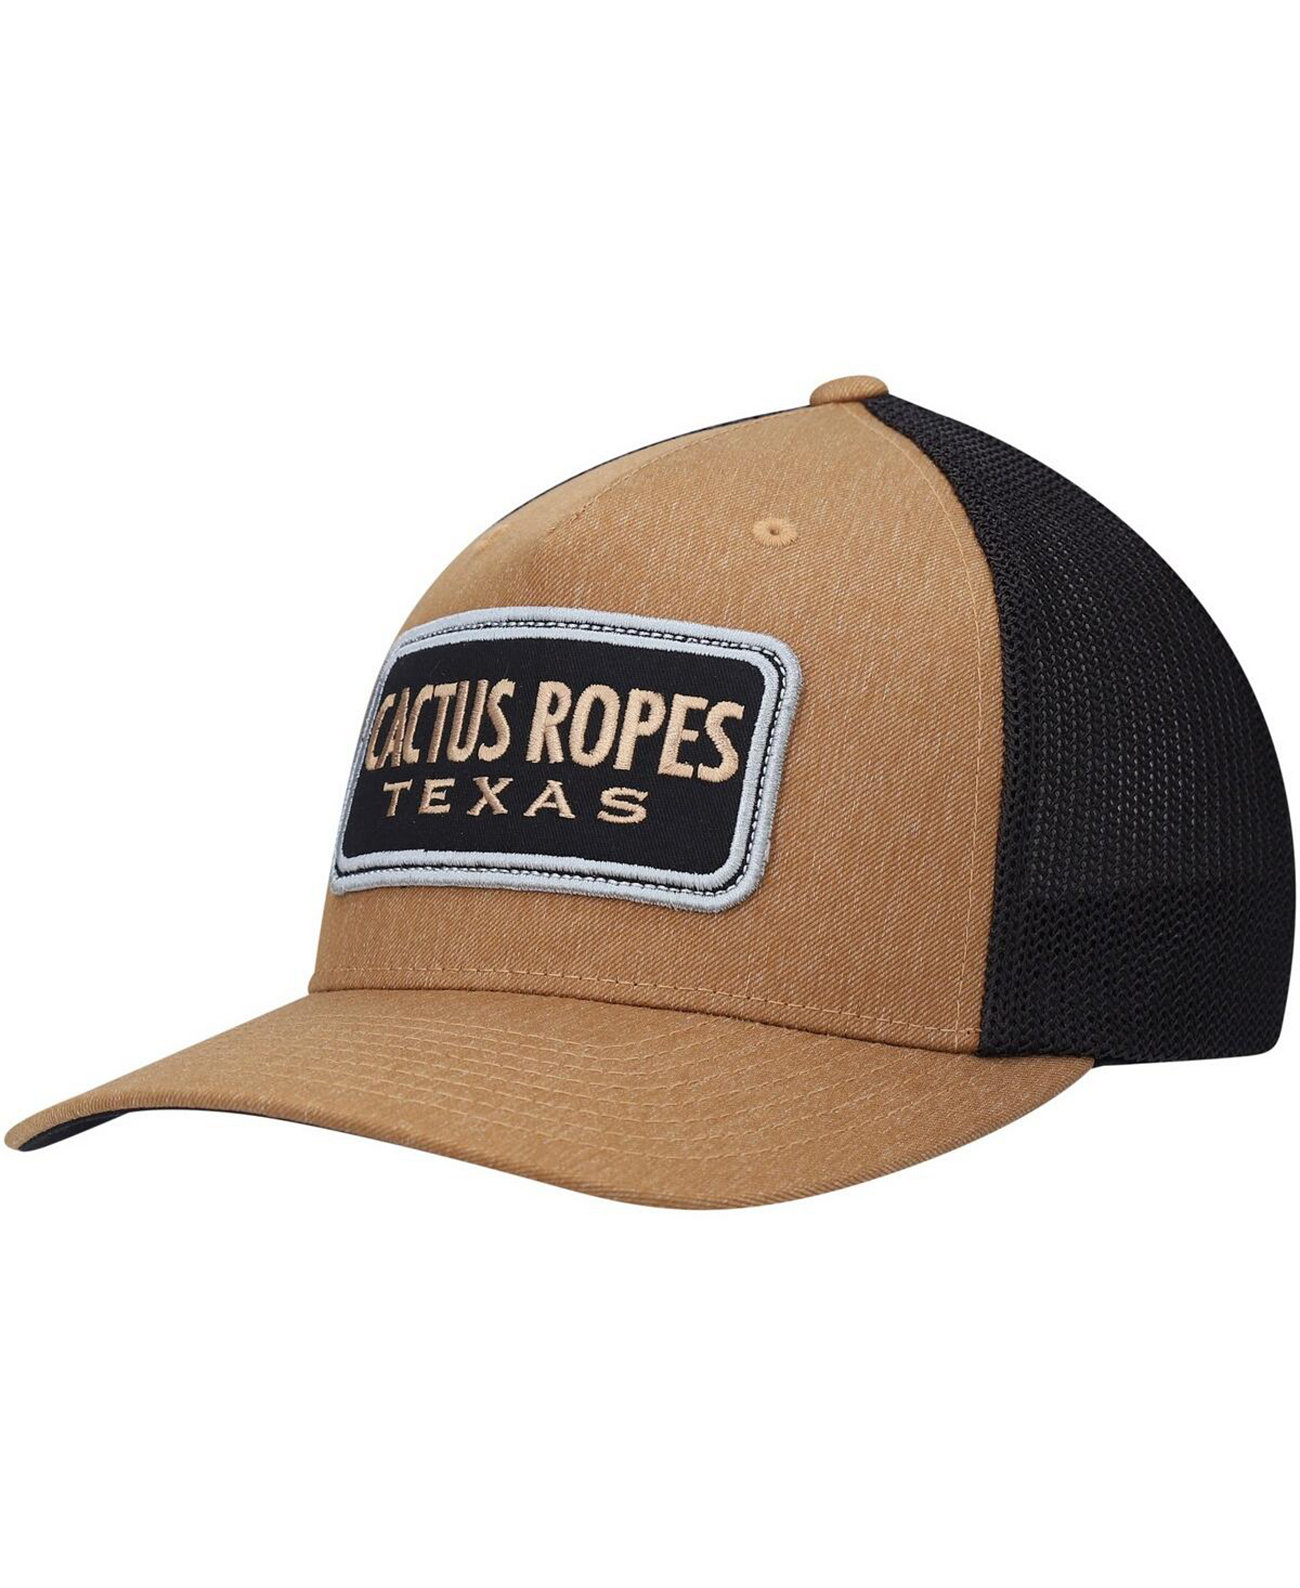 Мужская коричневая, черная шляпа Trucker Flex Hat Cactus Ropes Hooey